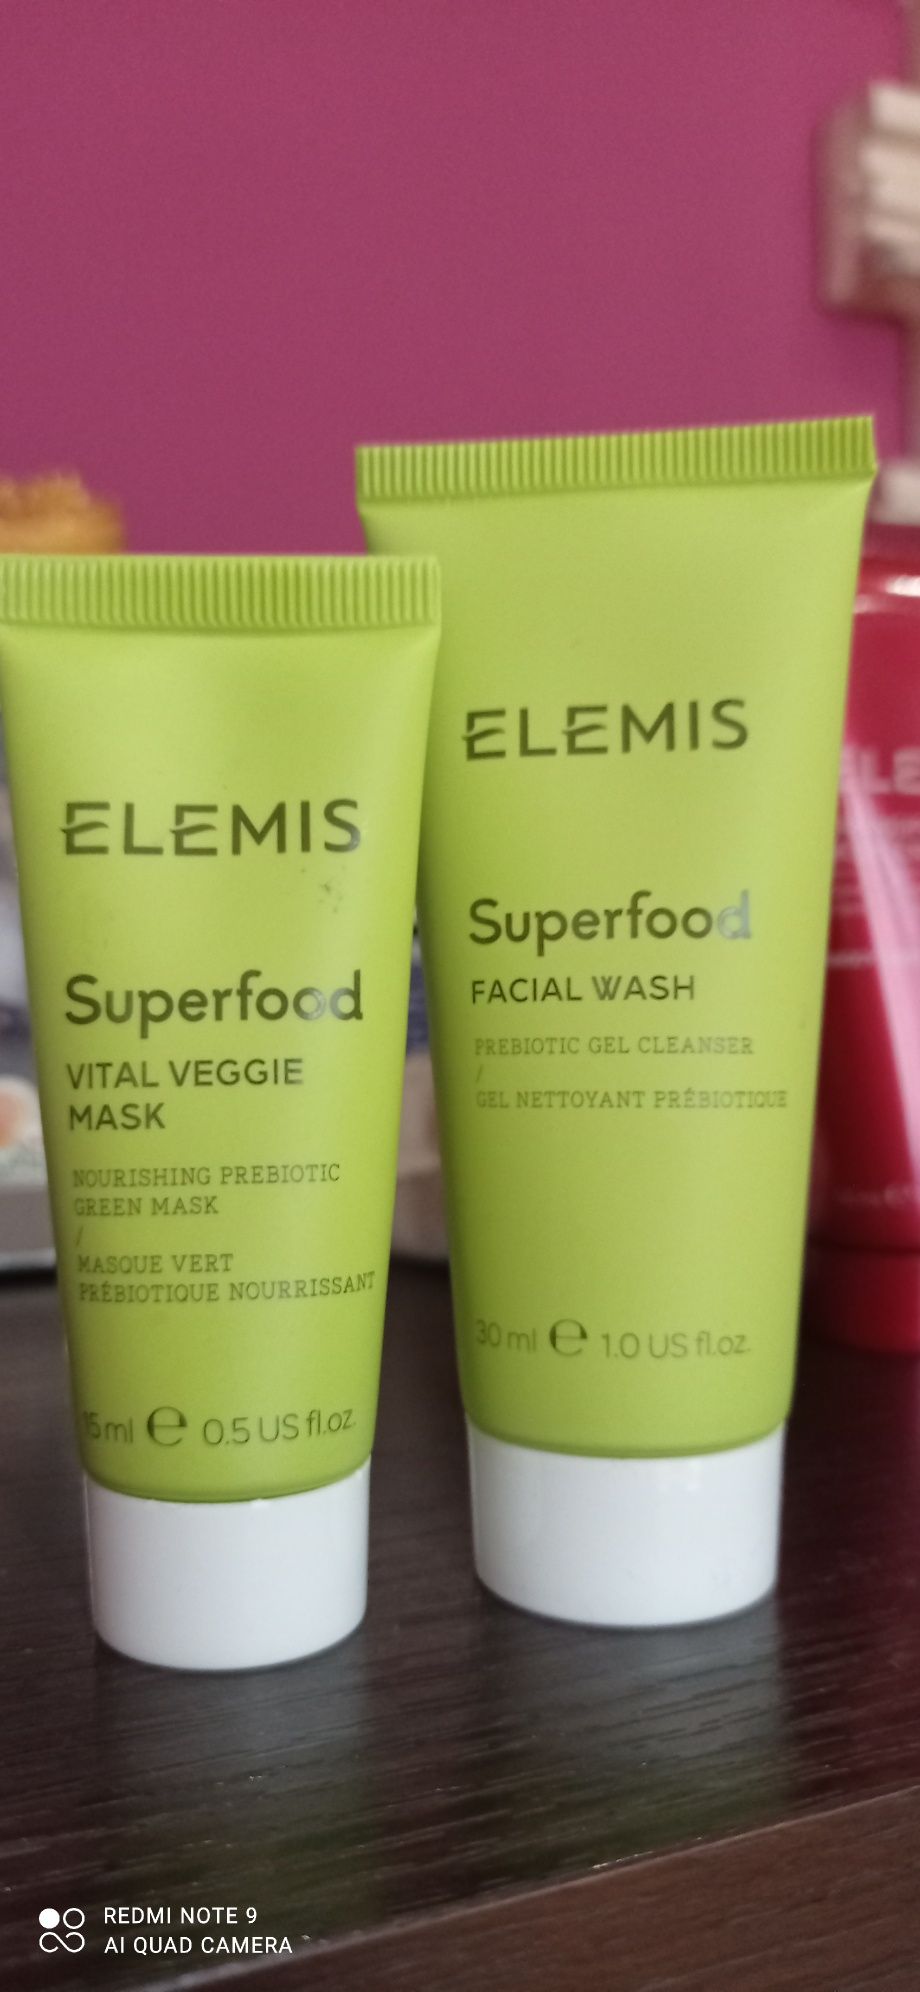 Elemis Superfood Vital Veggie Mask + Facial Wash